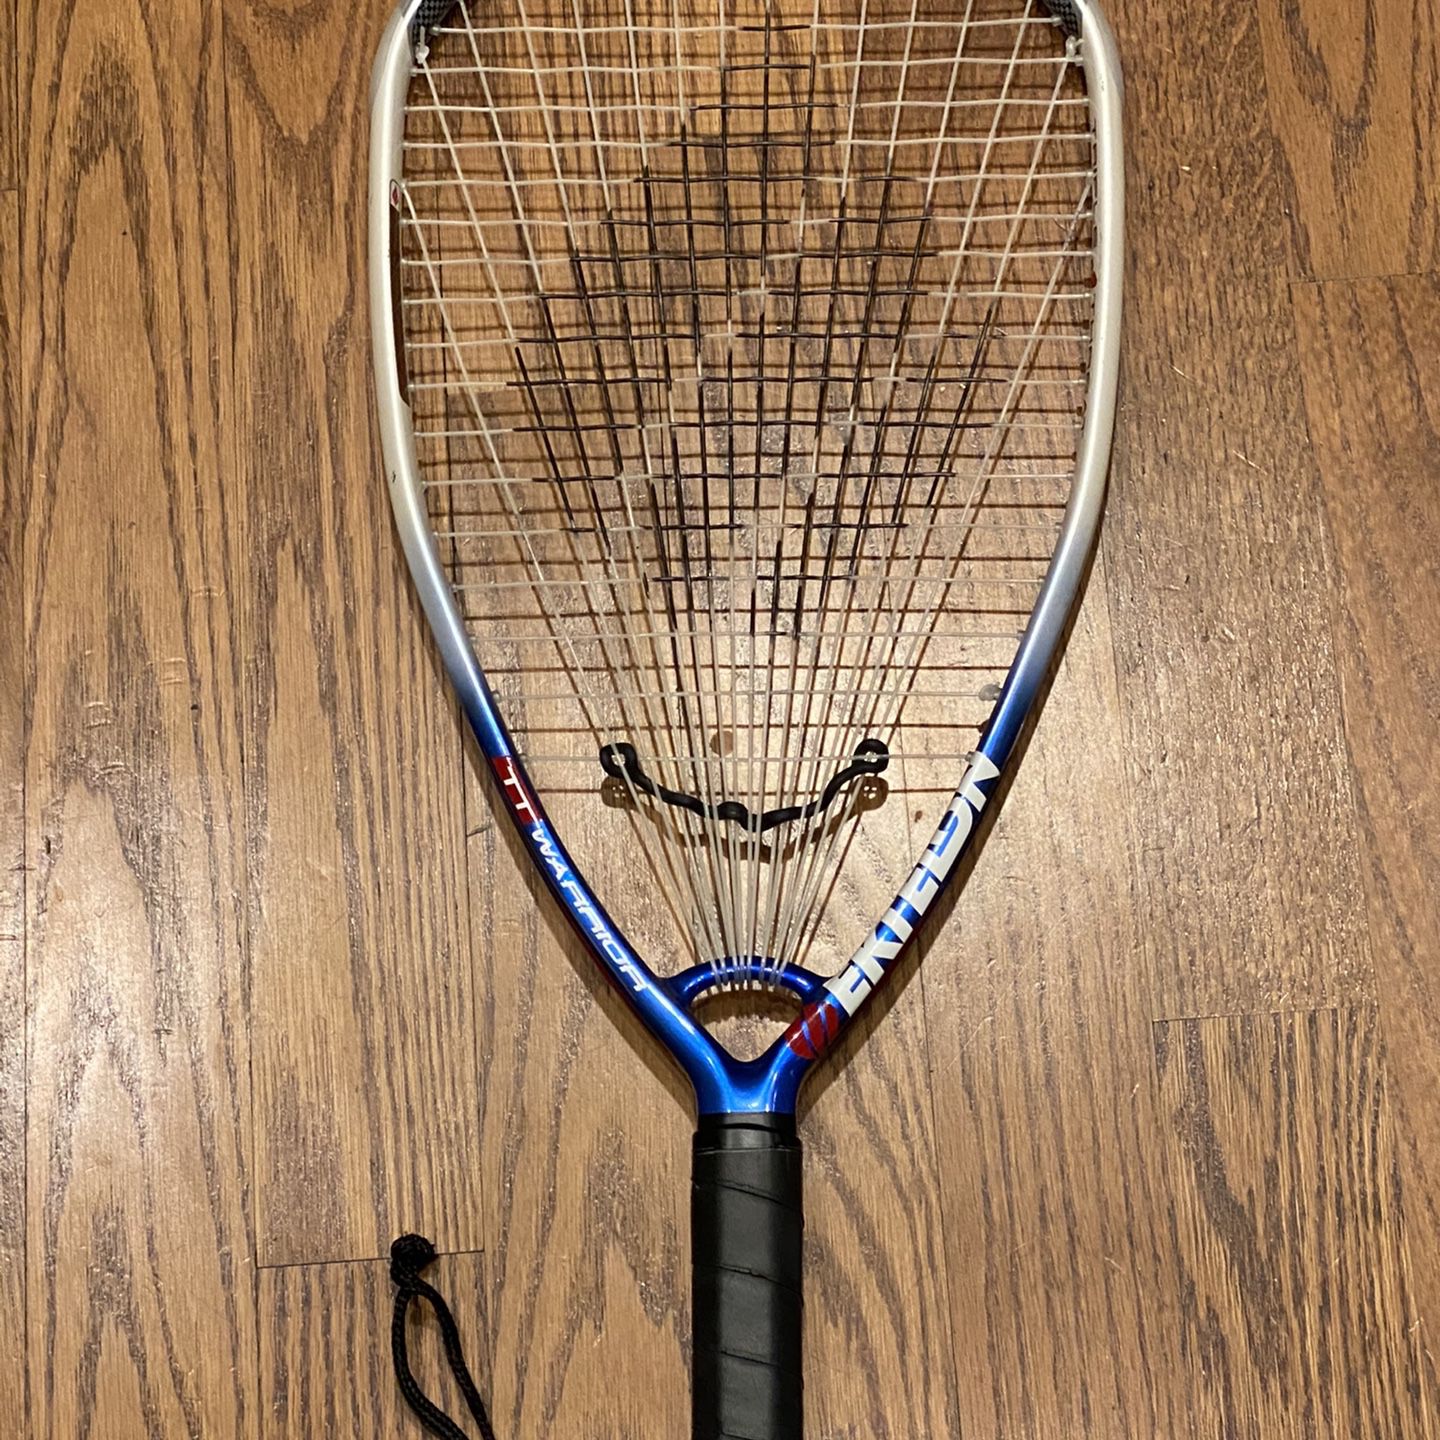 Ektelon Triple Threat Powerscoop 1700 Power Level Racquetball Racquet for sale online 